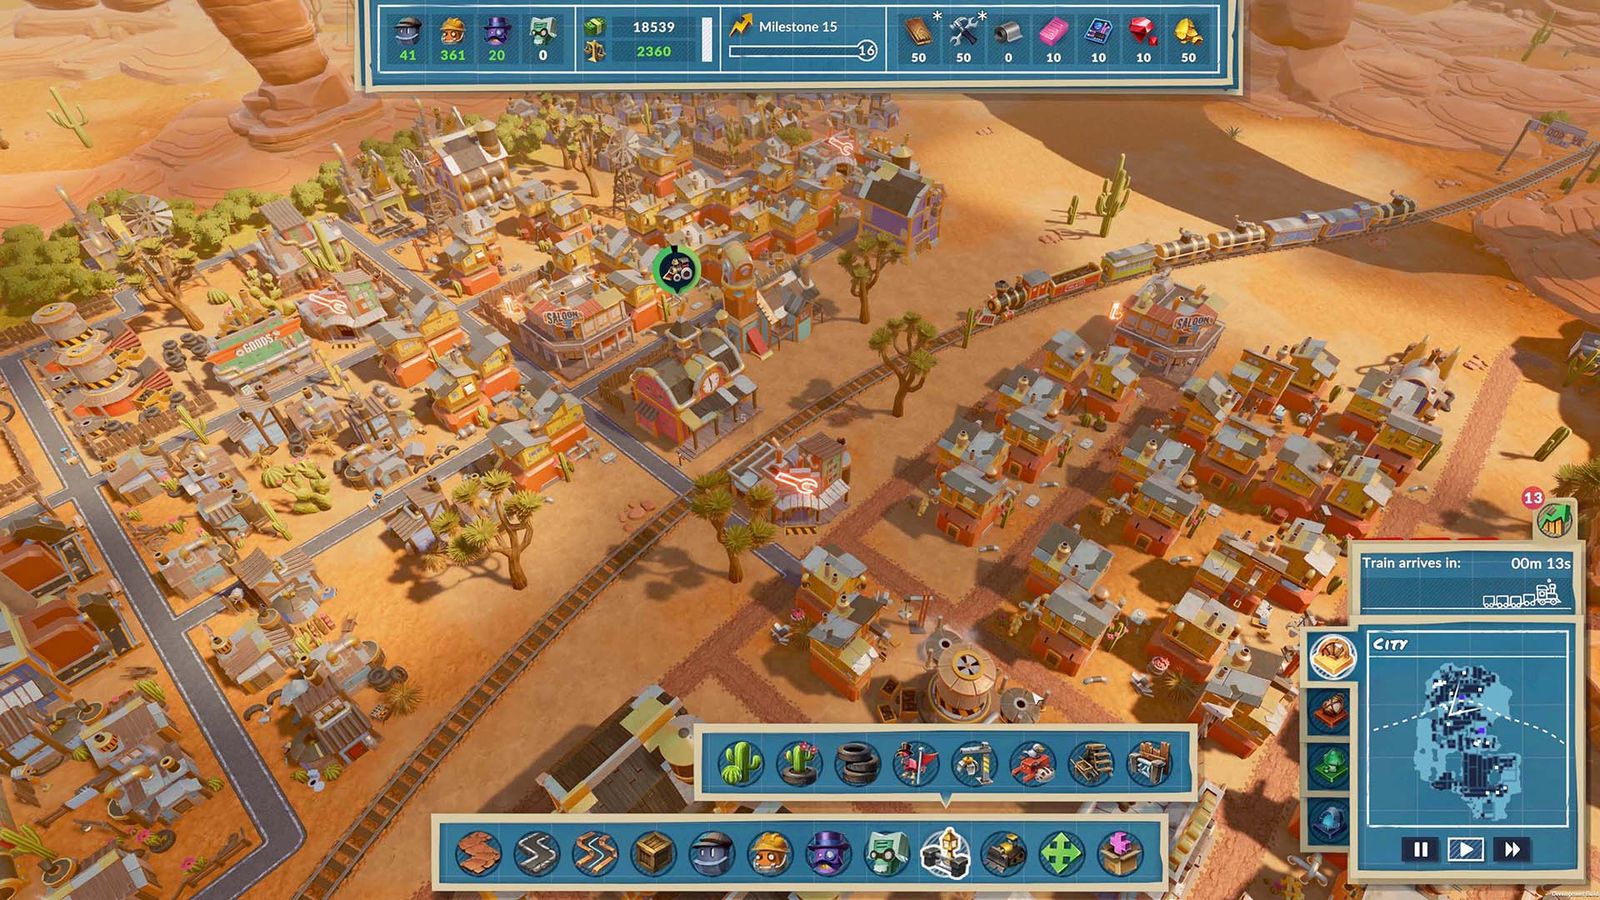 A well-built city in SteamWorld Build